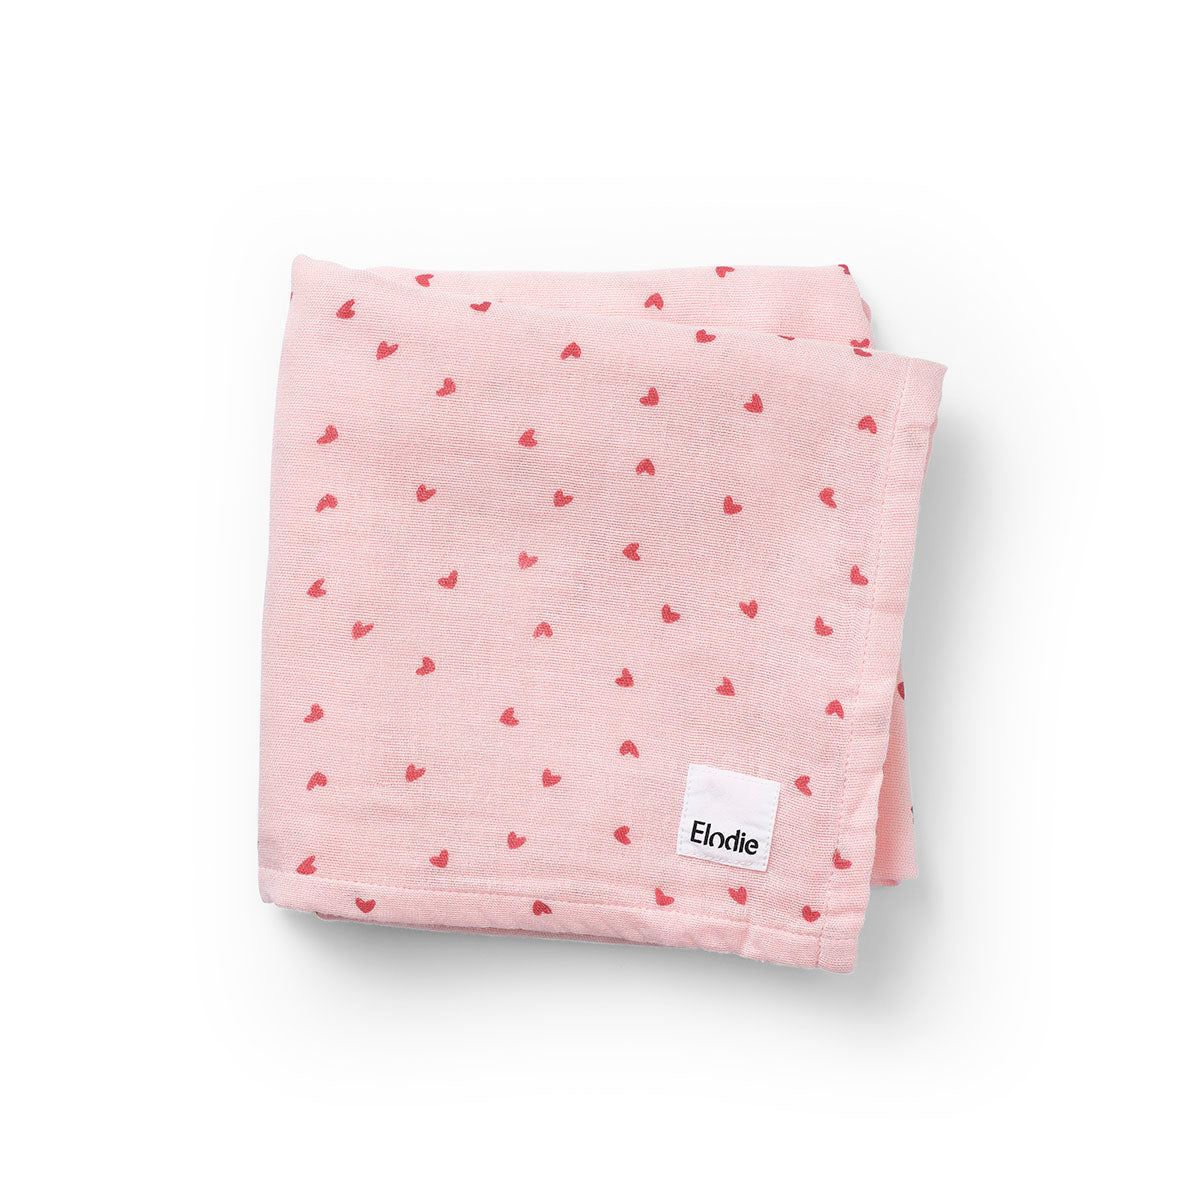 newborn gifts dubai by Elli Junior Babywear Trading LLC